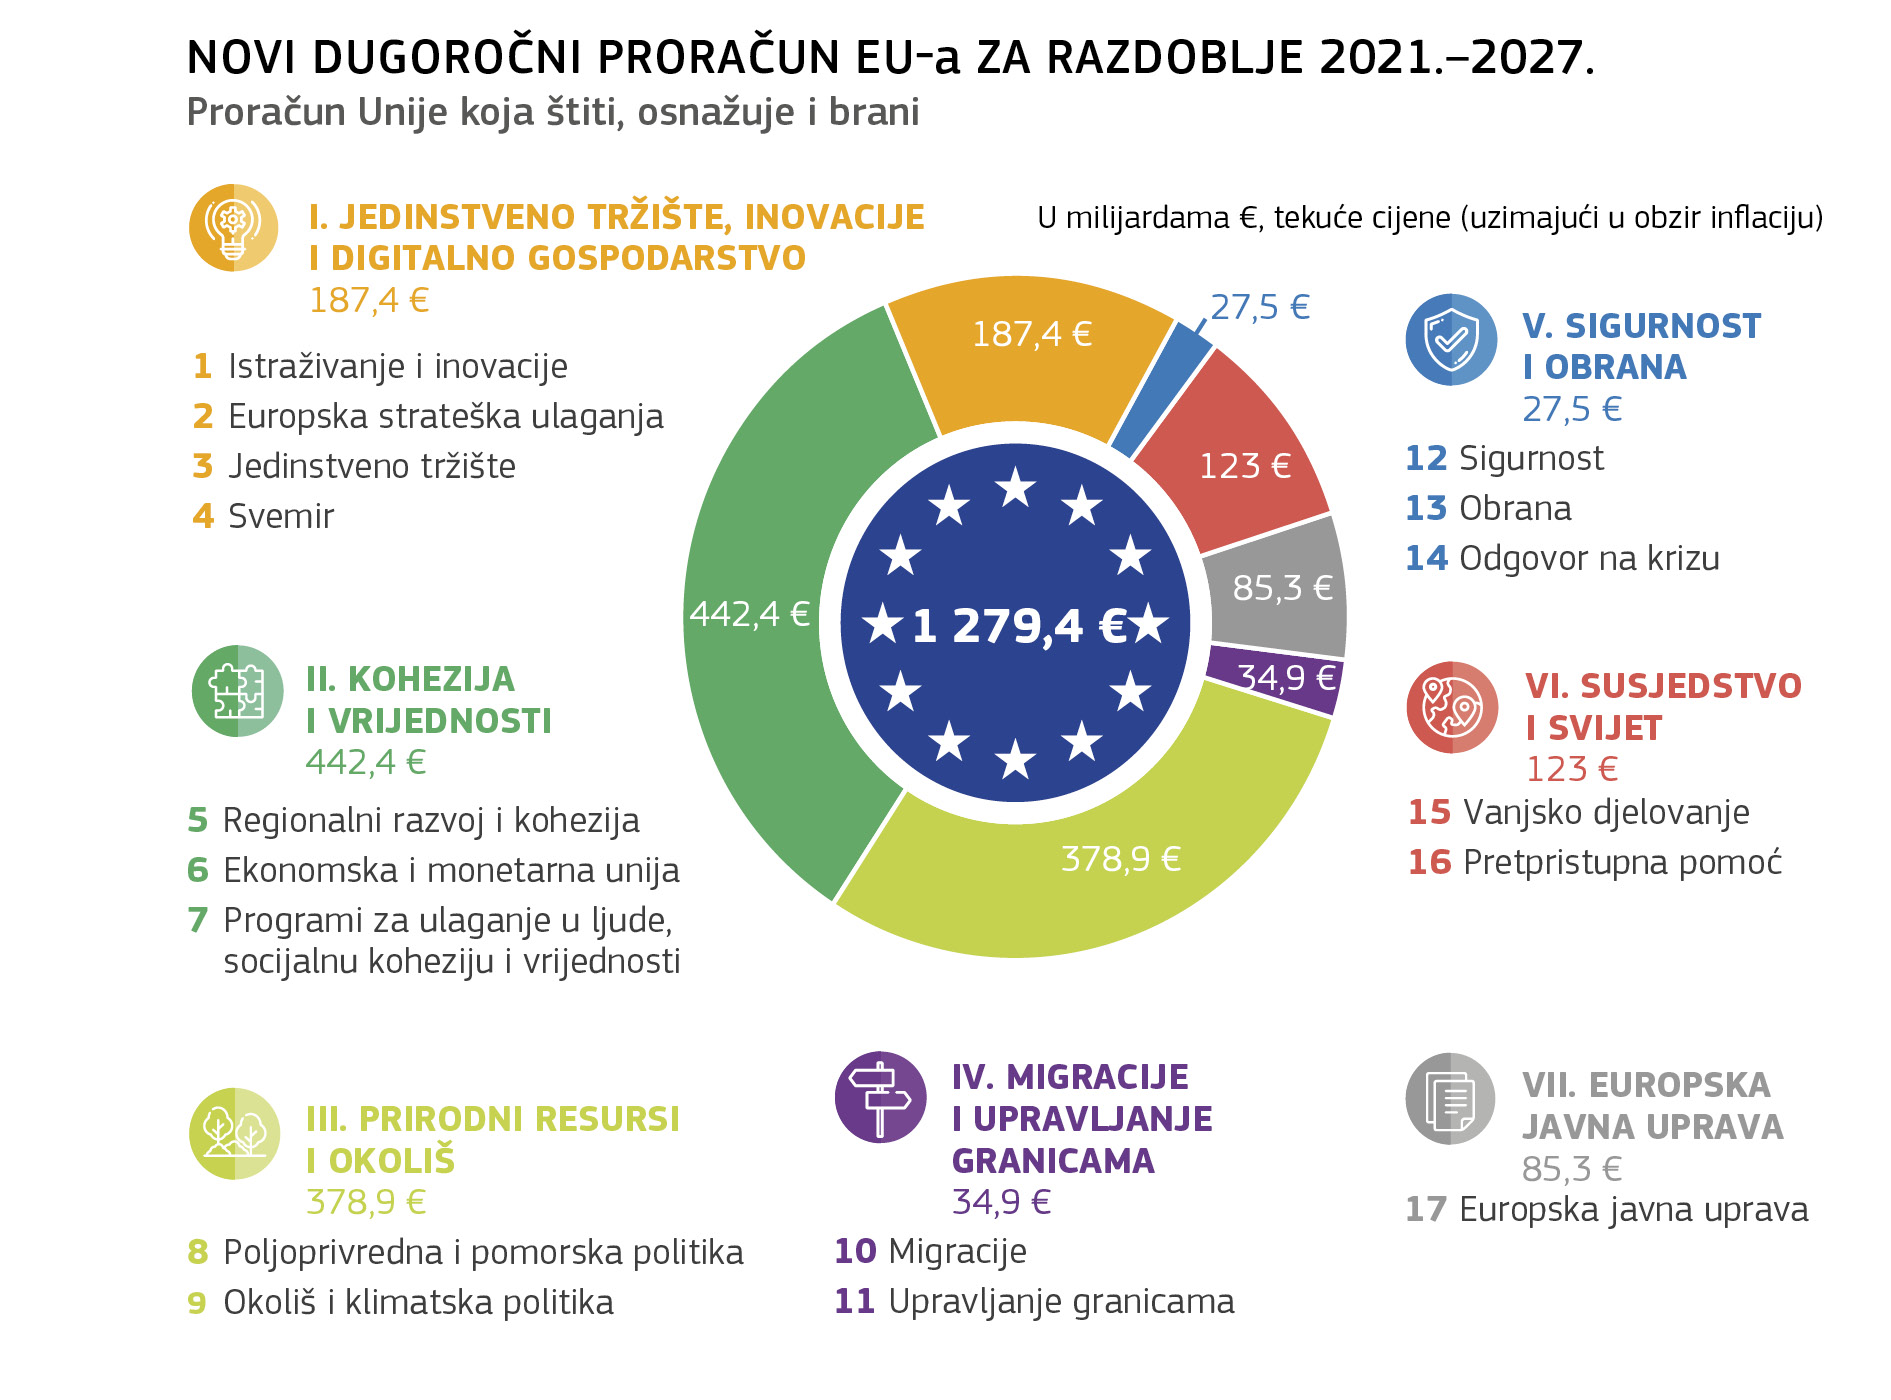 NOVI DUGOROČNI PRORAČUN EU-a ZA RAZDOBLJE 2021.–2027.